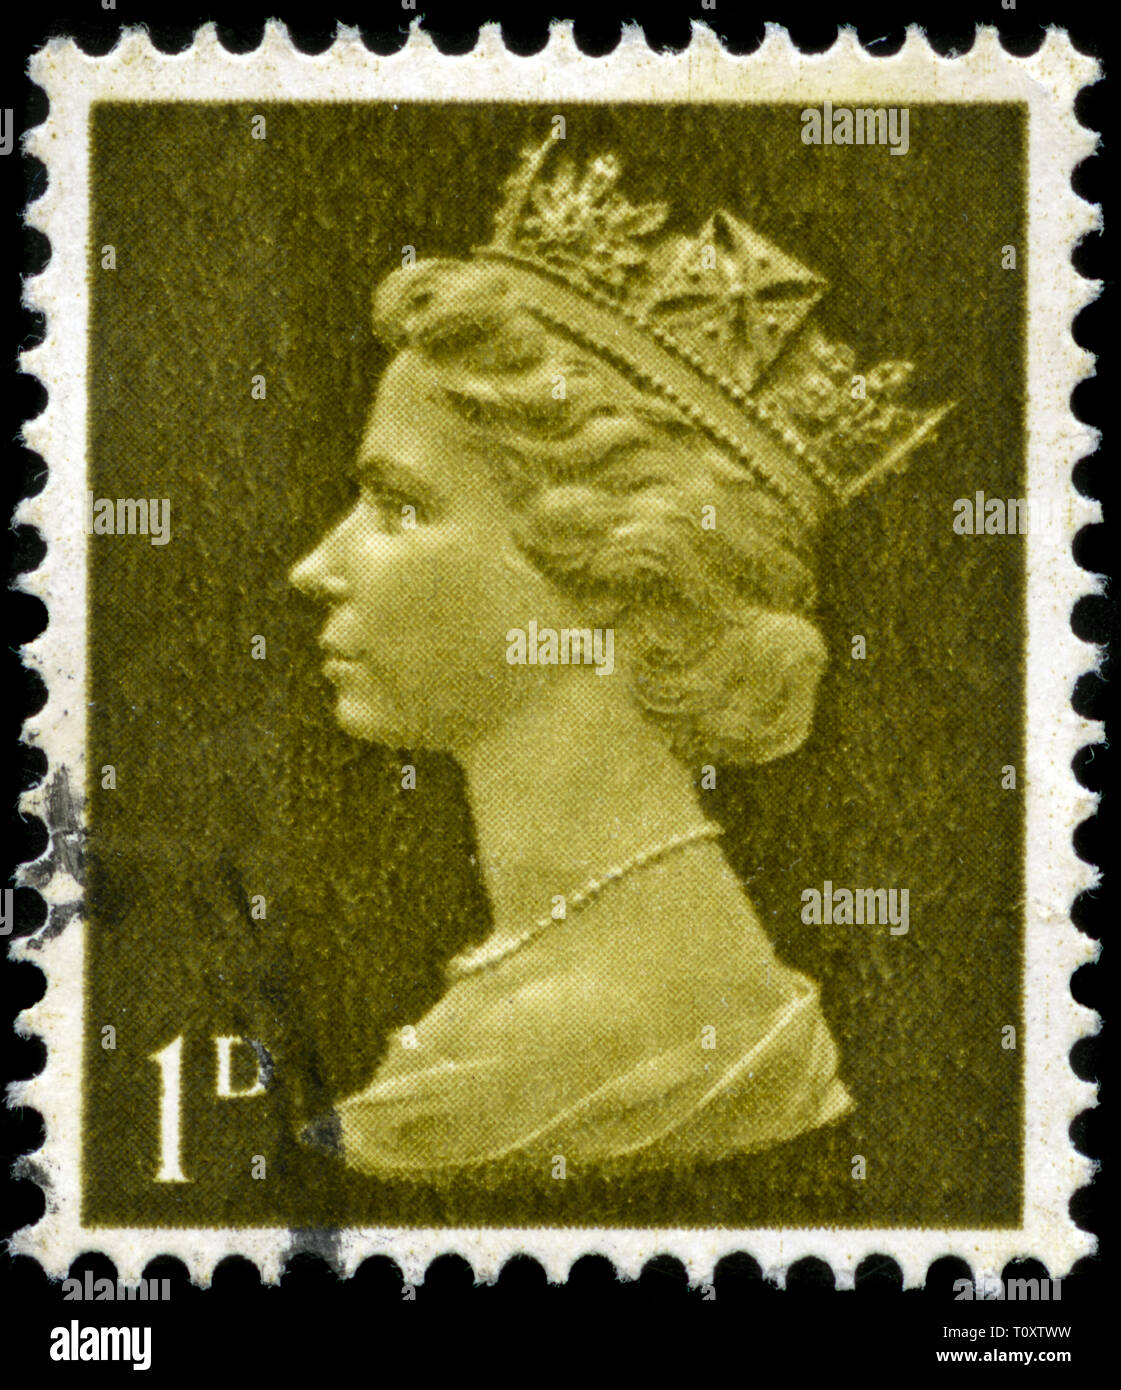 Francobollo da Regno Unito e Irlanda del Nord nel Queen Elizabeth II - 1d Predecimal Machin serie emesso nel 1968 Foto Stock